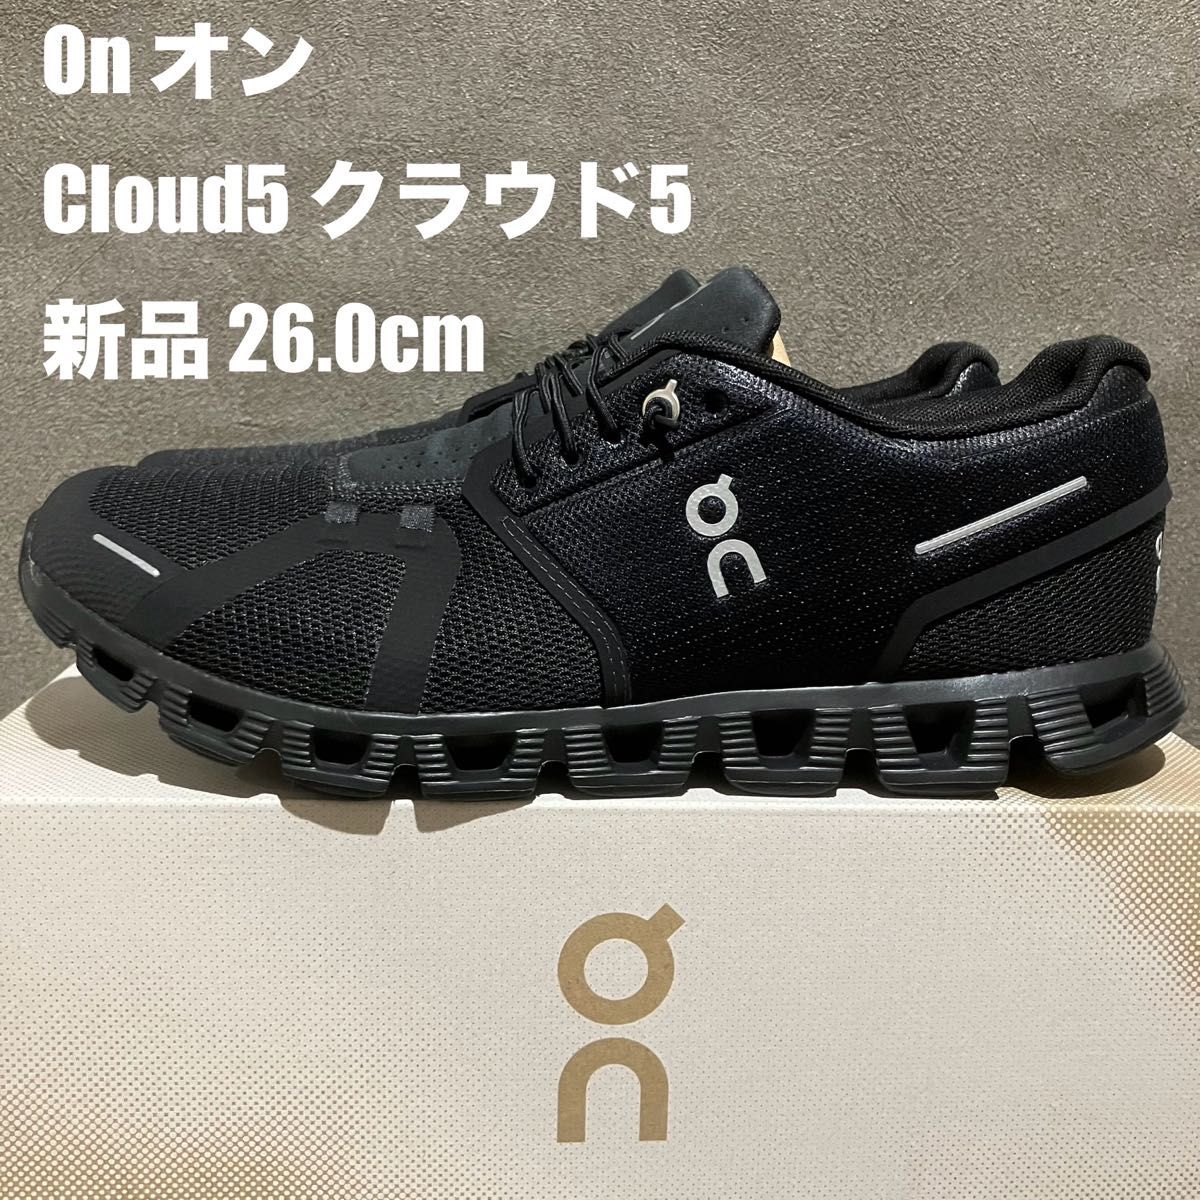 【新品】On（オン）Cloud 5 クラウド5 シューズ 26.0cm